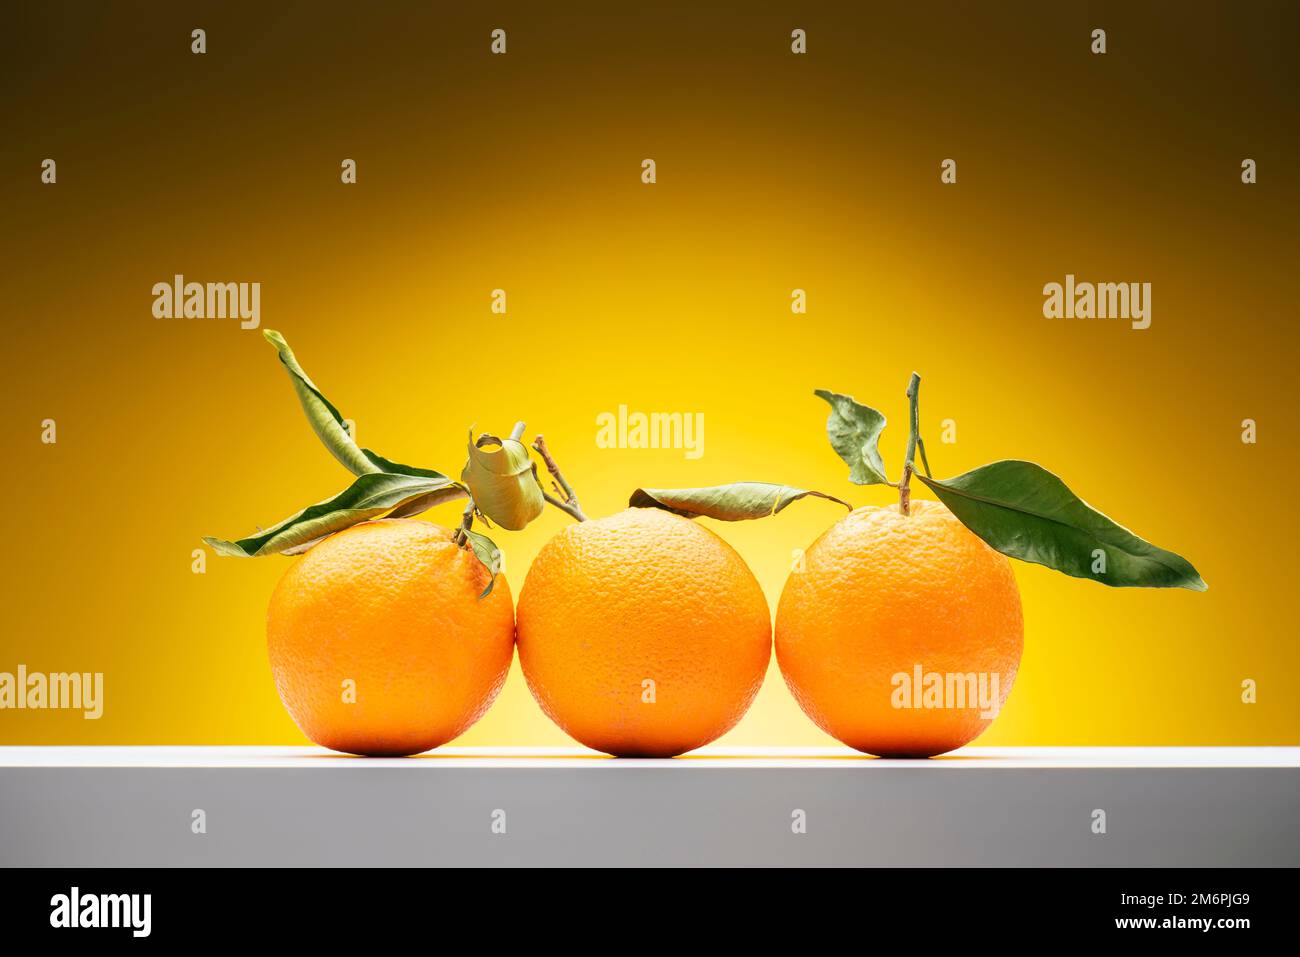 Fresh orange fruits with leaves on shelf on yellow background. Stock Photo